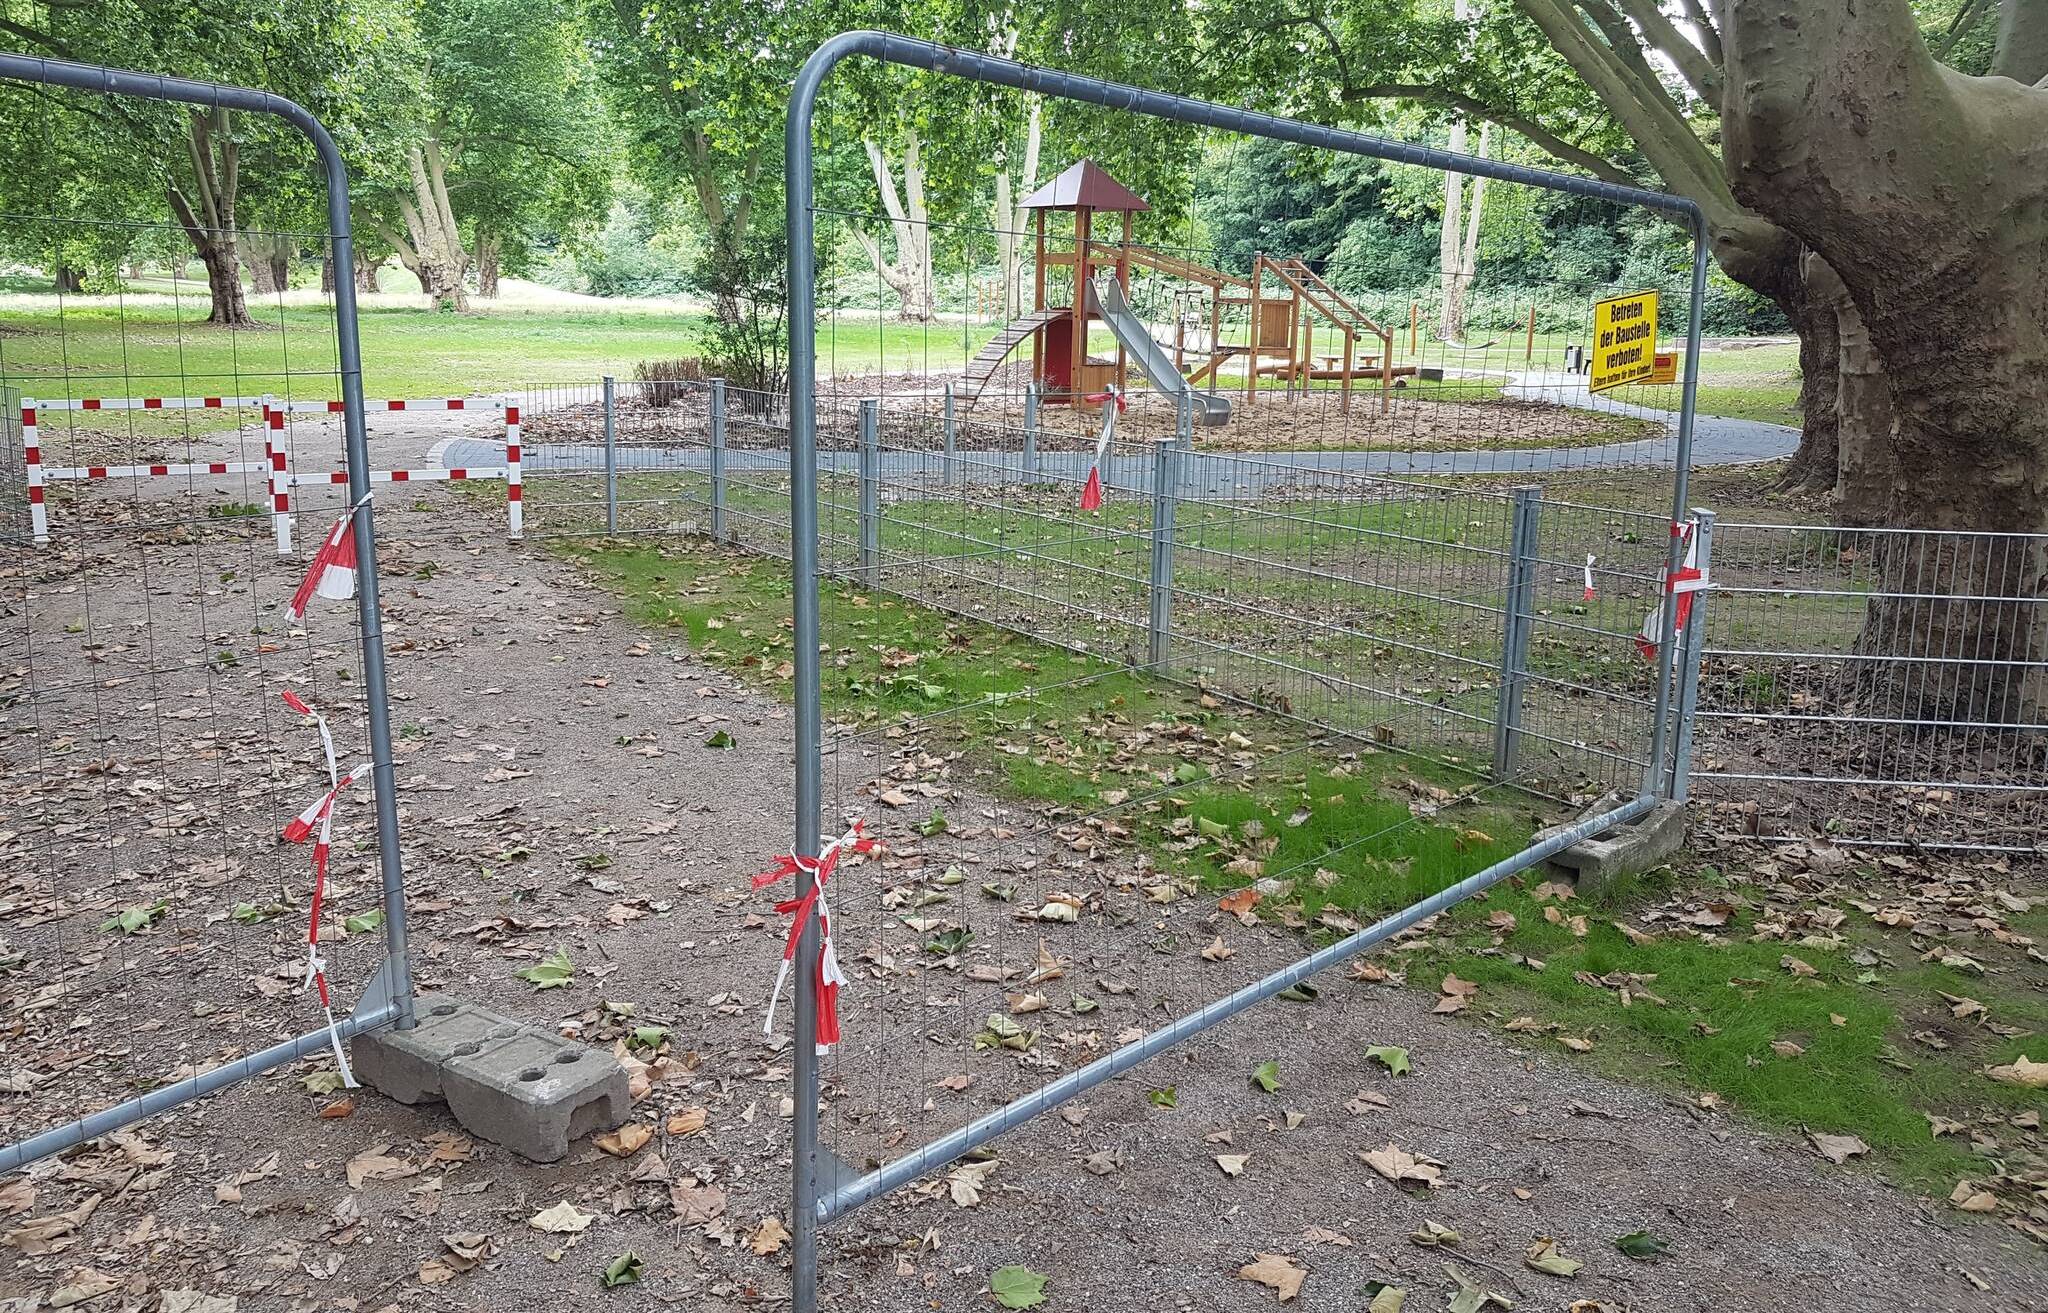  „Betreten der Baustelle verboten!“ heißt es auf dem Schild. Vor allem Familien haben kein Verständnis, dass ihre Kinder den Spielplatz noch nicht nutzen dürfen. 